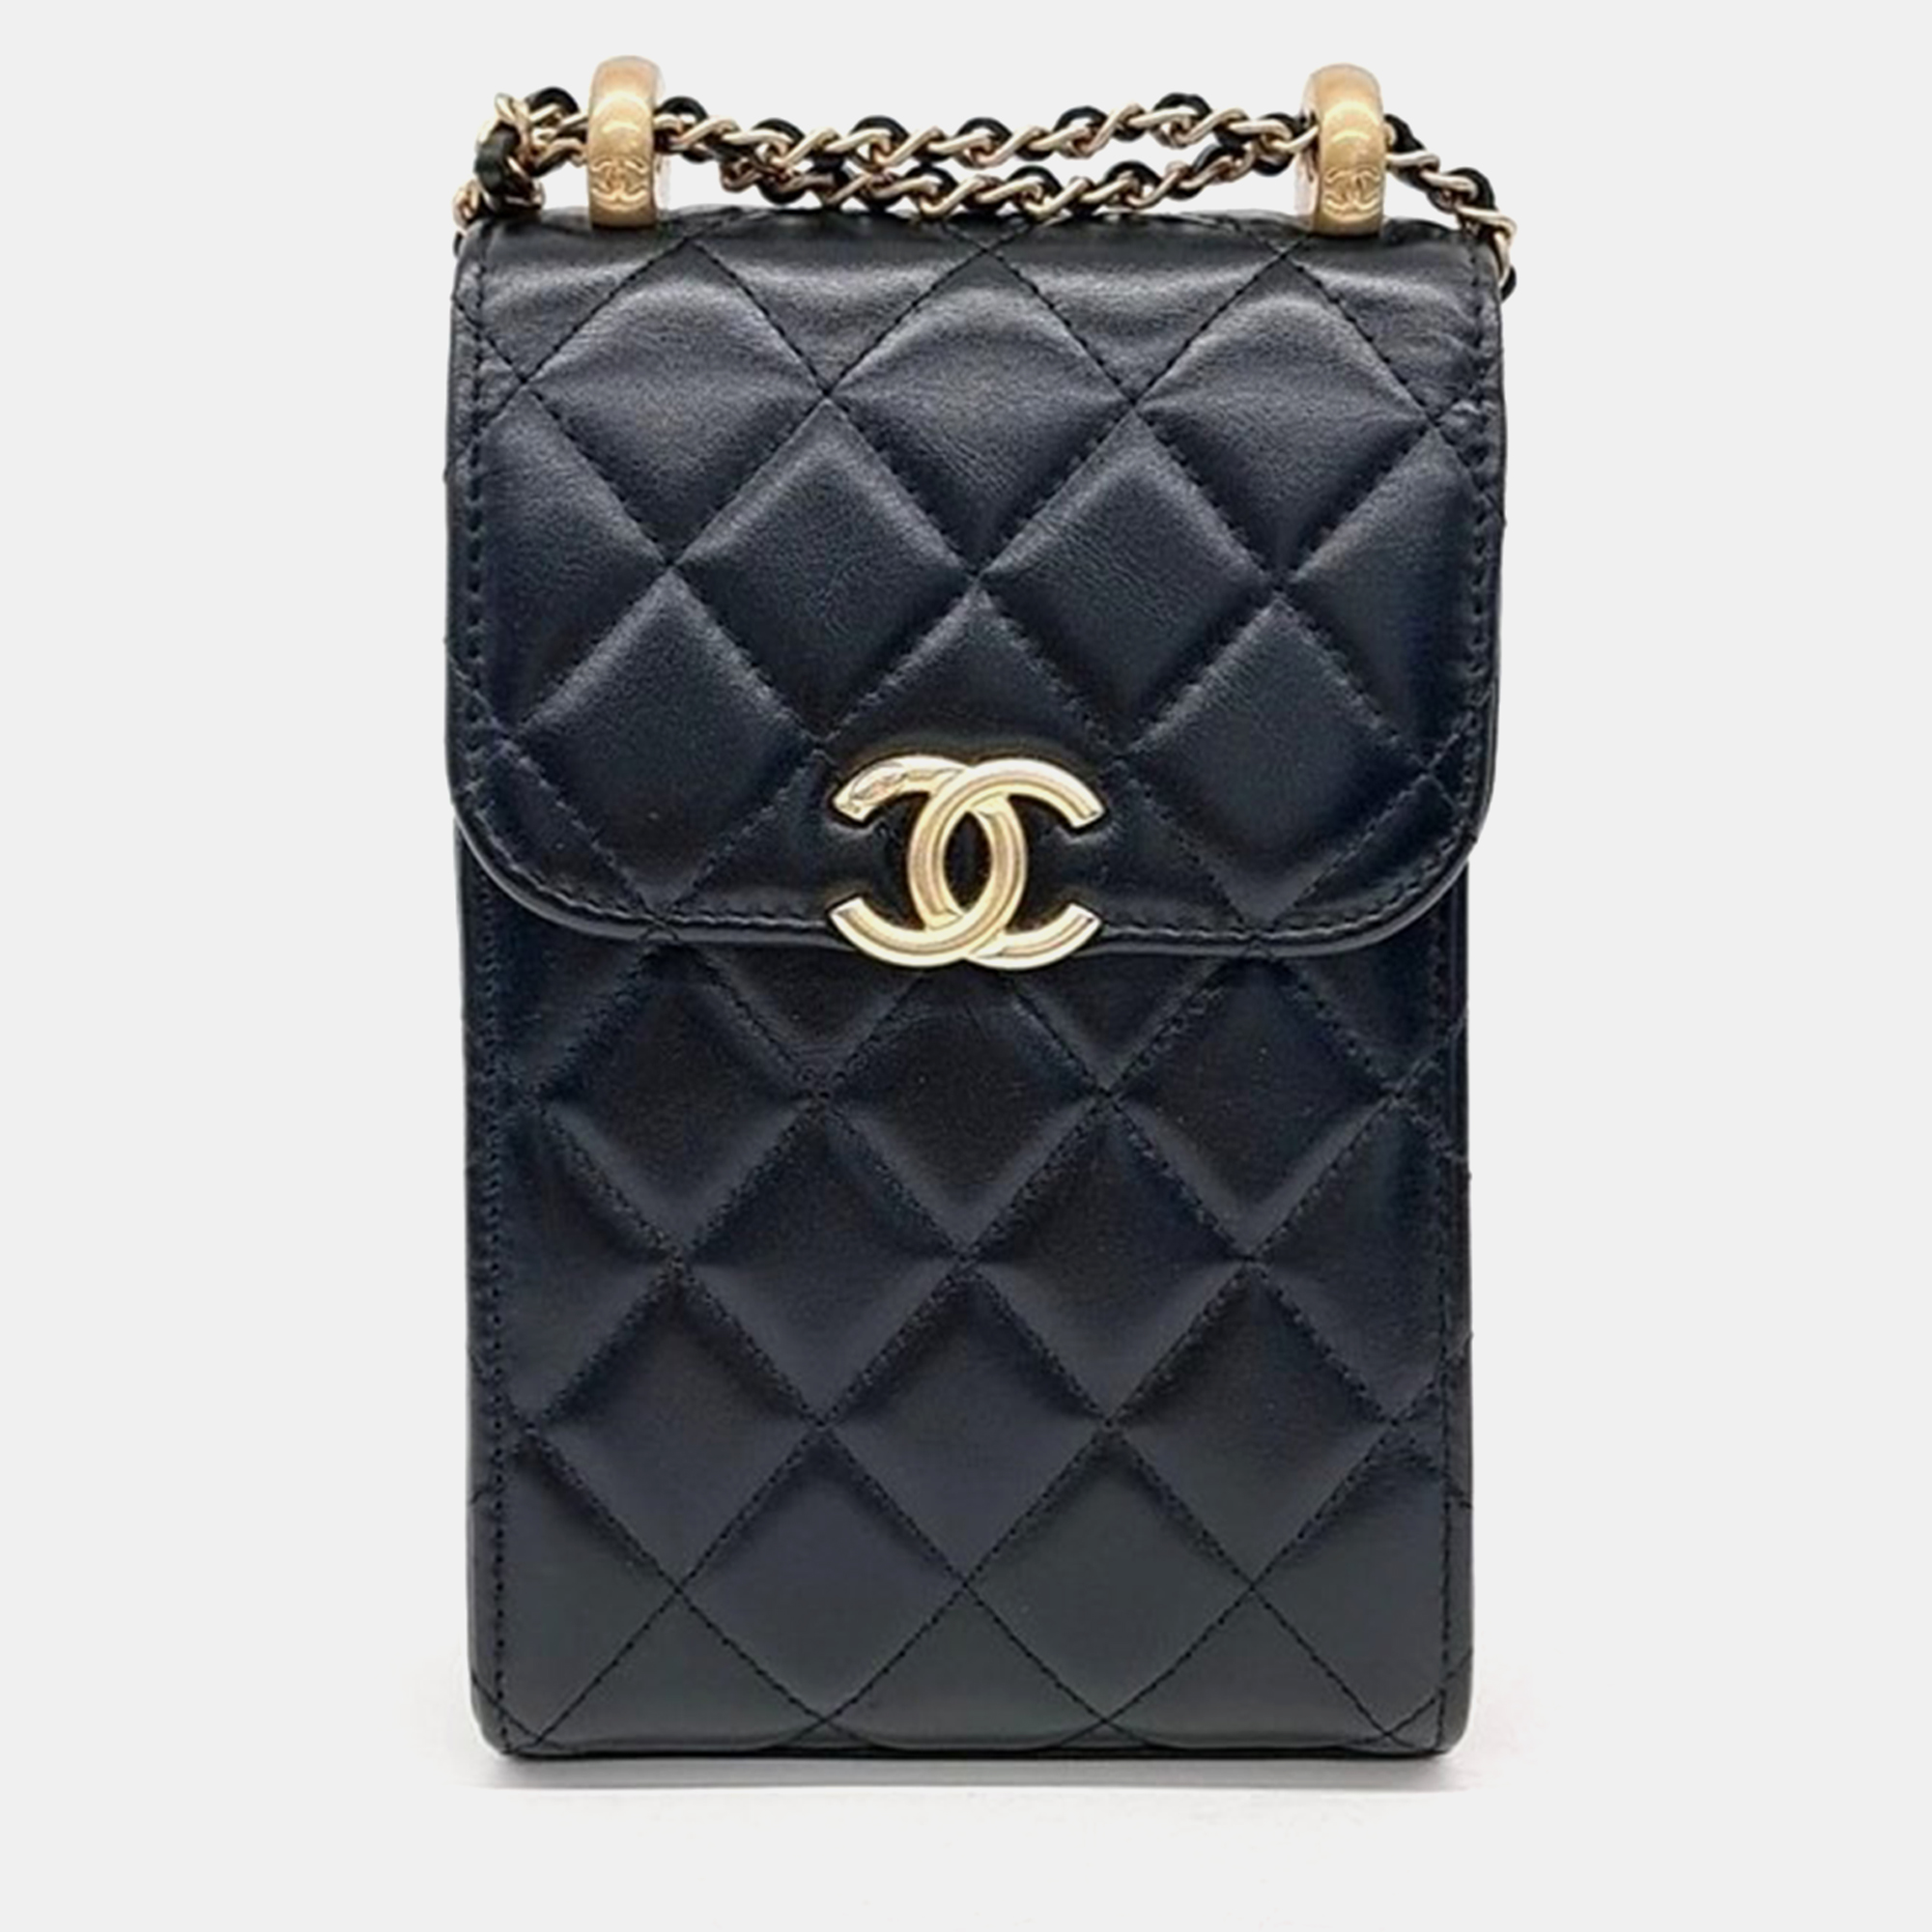 

Chanel Golden Ball Phone Holder Mini Chain Cross Bag, Black